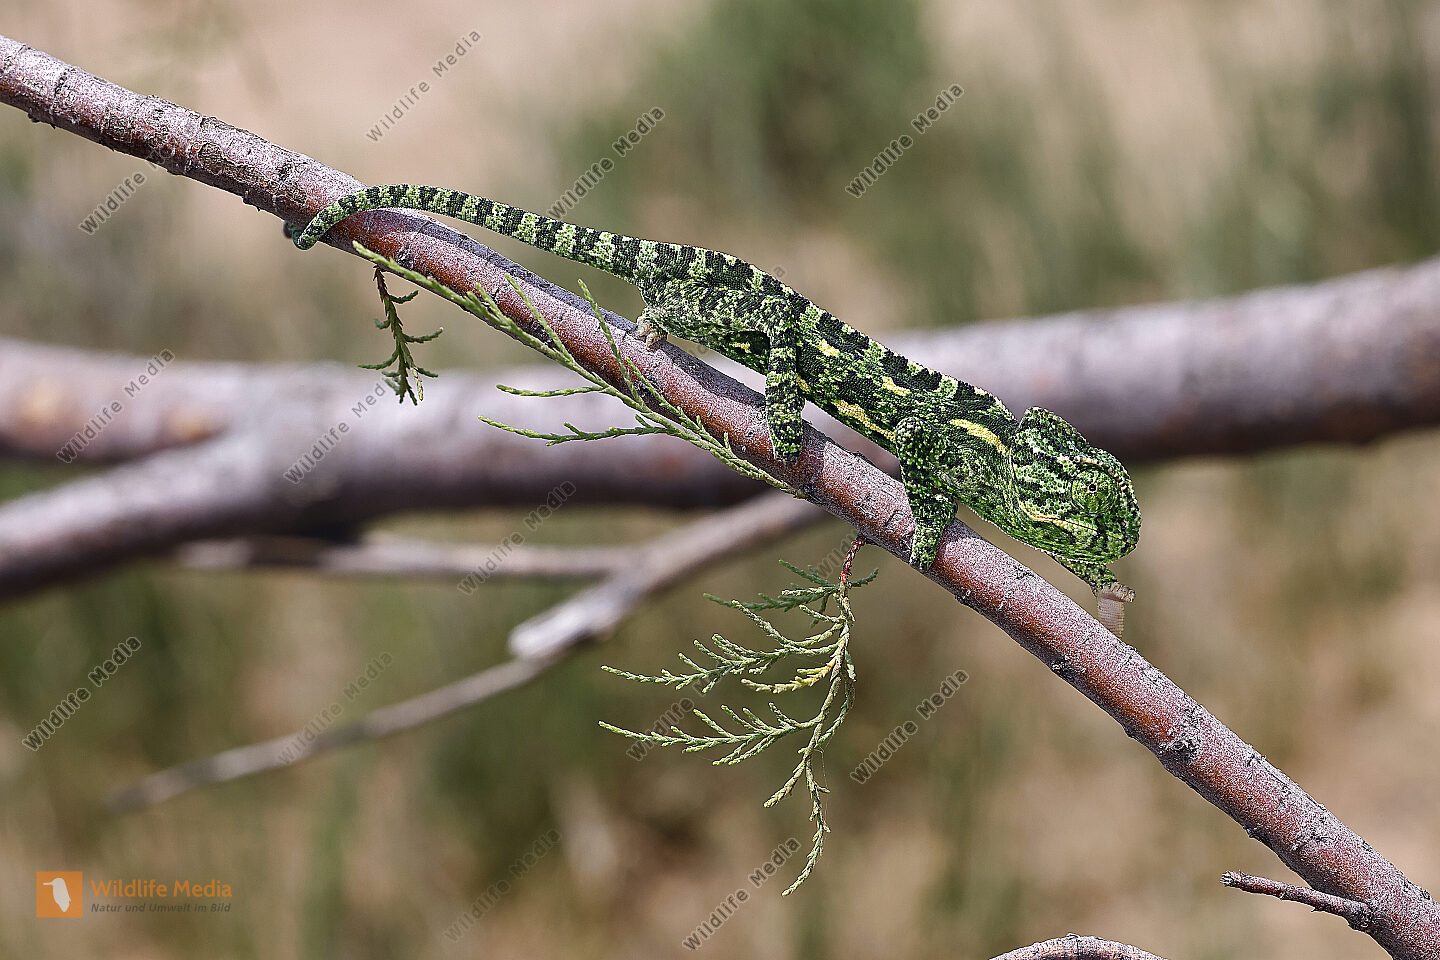 Europäisches Chameleon